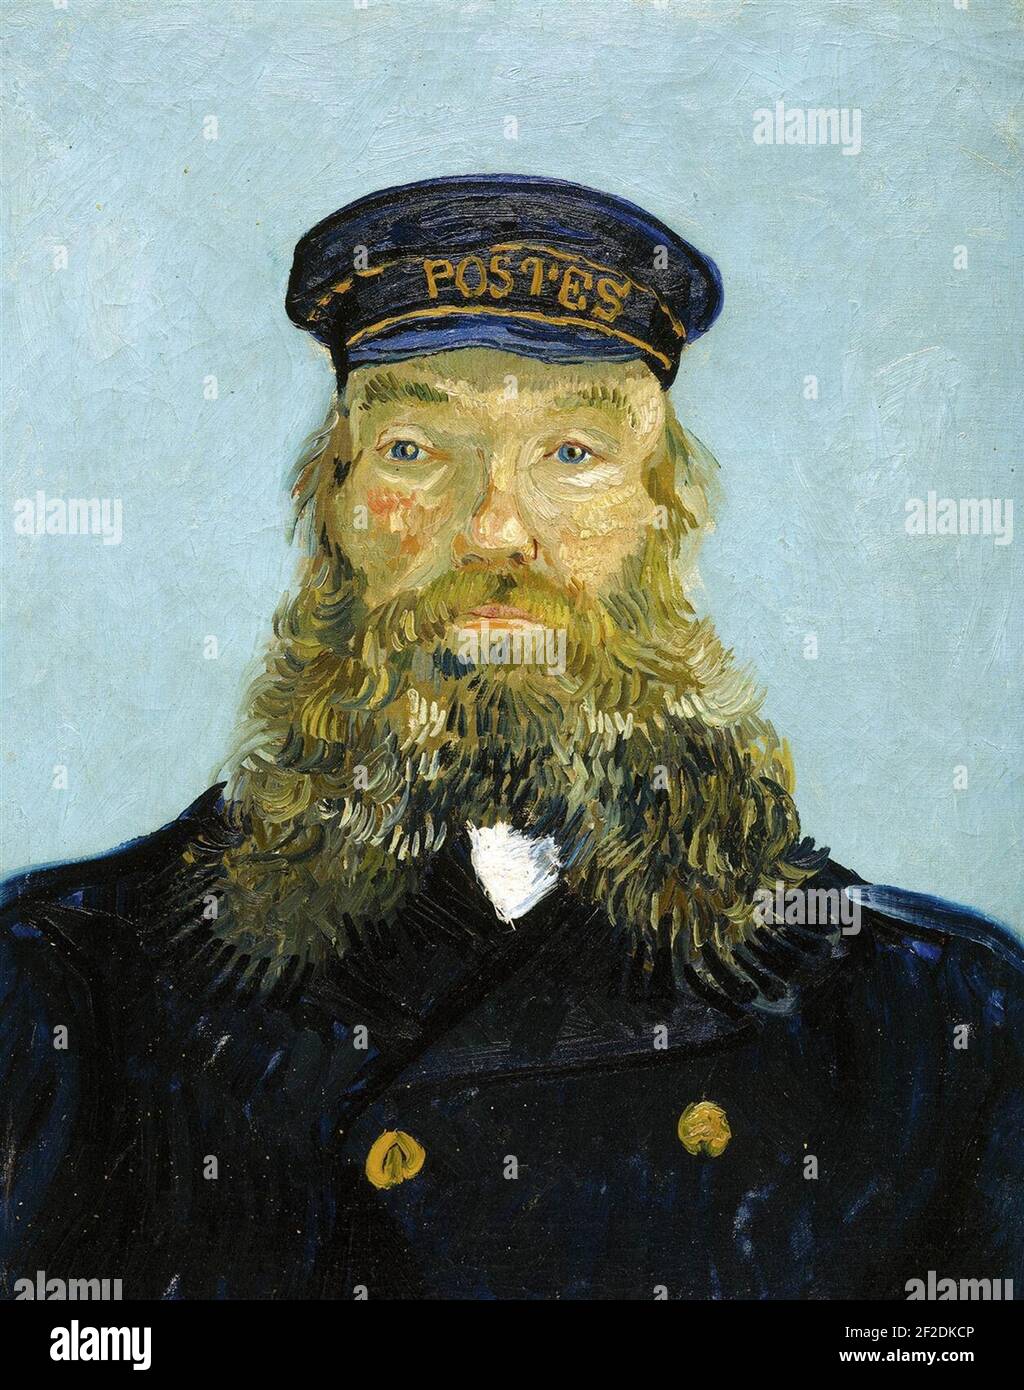 Retrato del Postman Joseph Roulin (1888) van Gogh DIA. Foto de stock